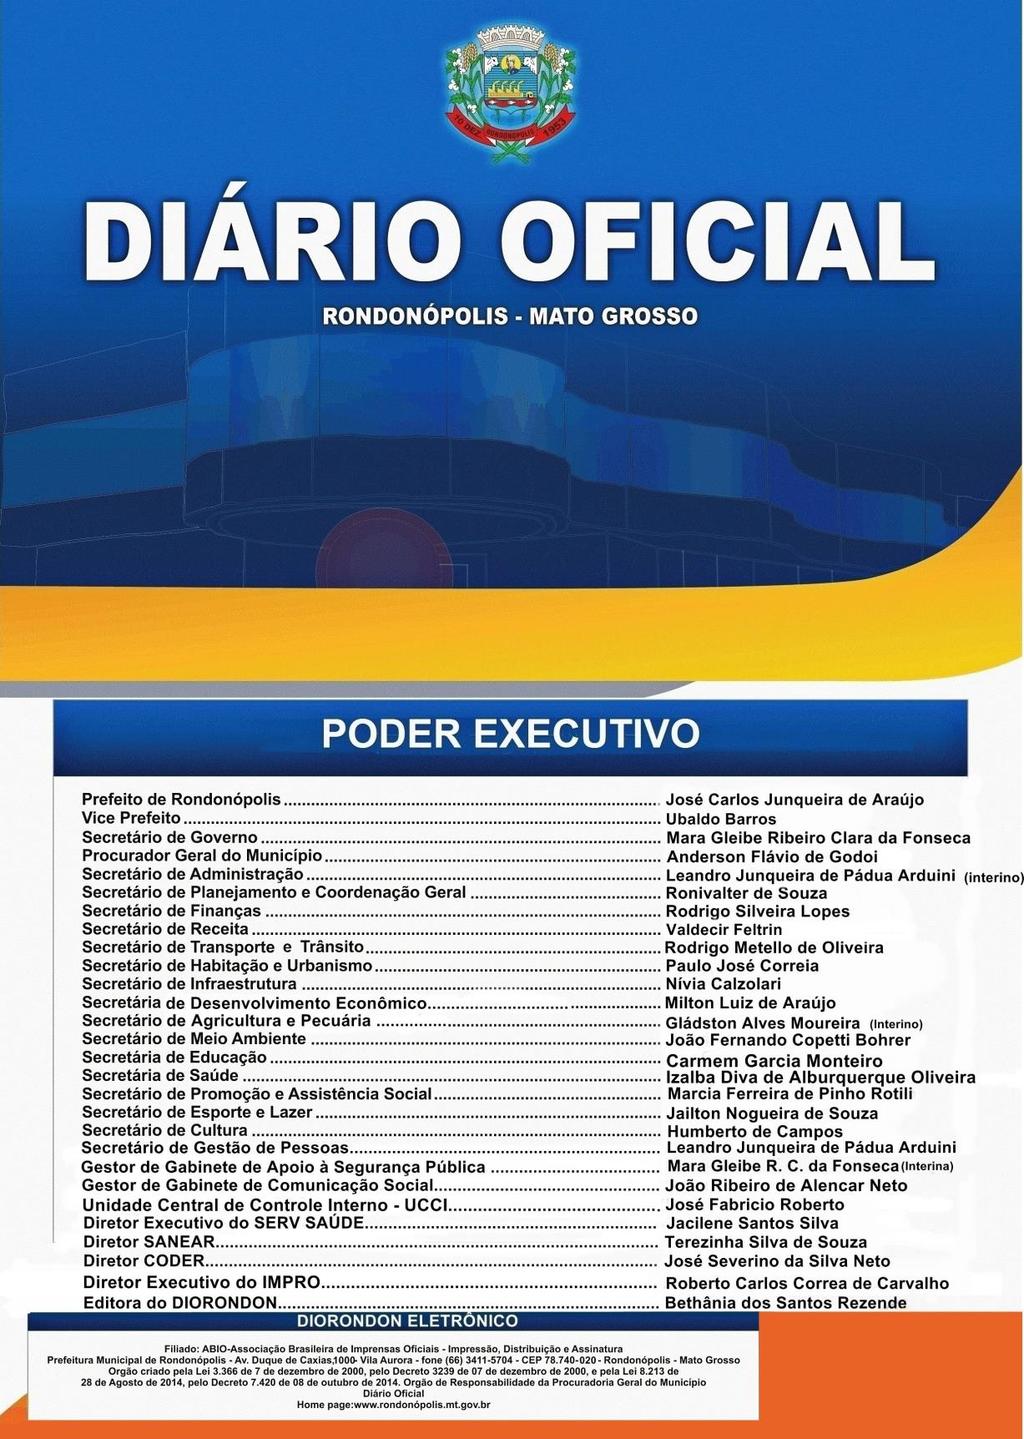 Assinado de forma digital por BETHANIA DOS SANTOS REZENDE:03915091103 DN: c=br, o=icp-brasil, ou=secretaria da Receita Federal do Brasil - RFB, ou=rfb e-cpf A1,